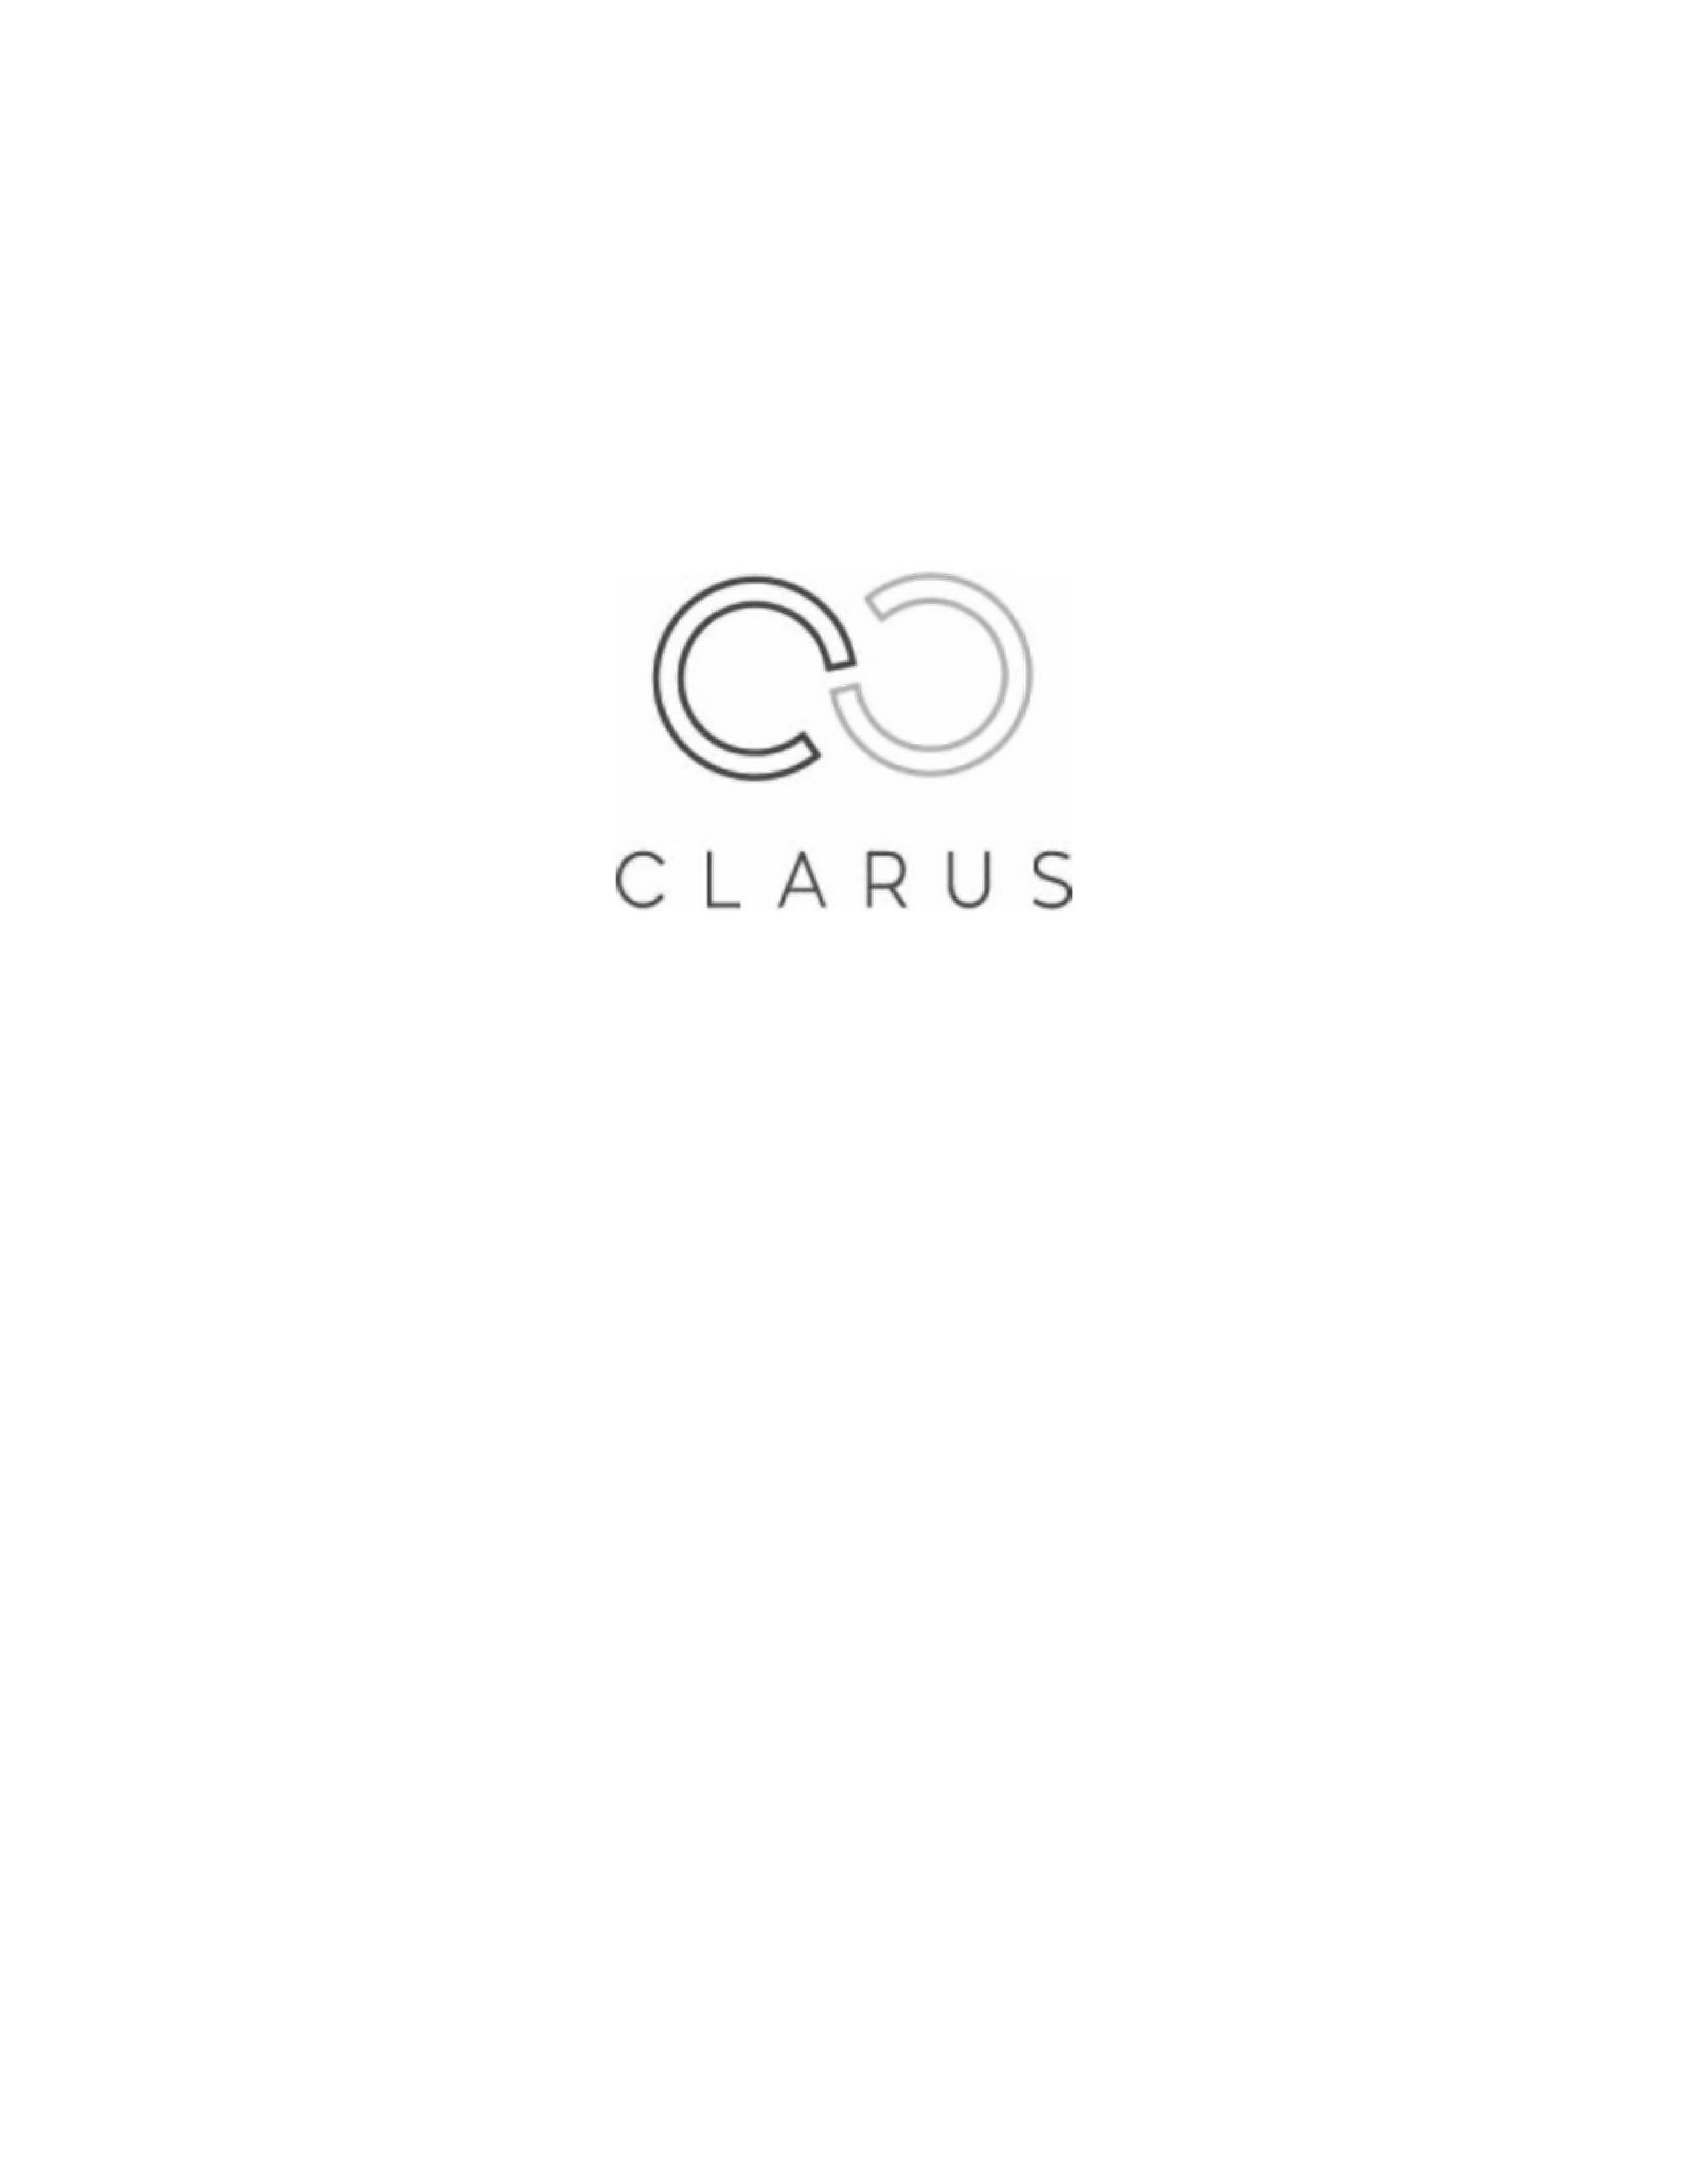 CLARUS